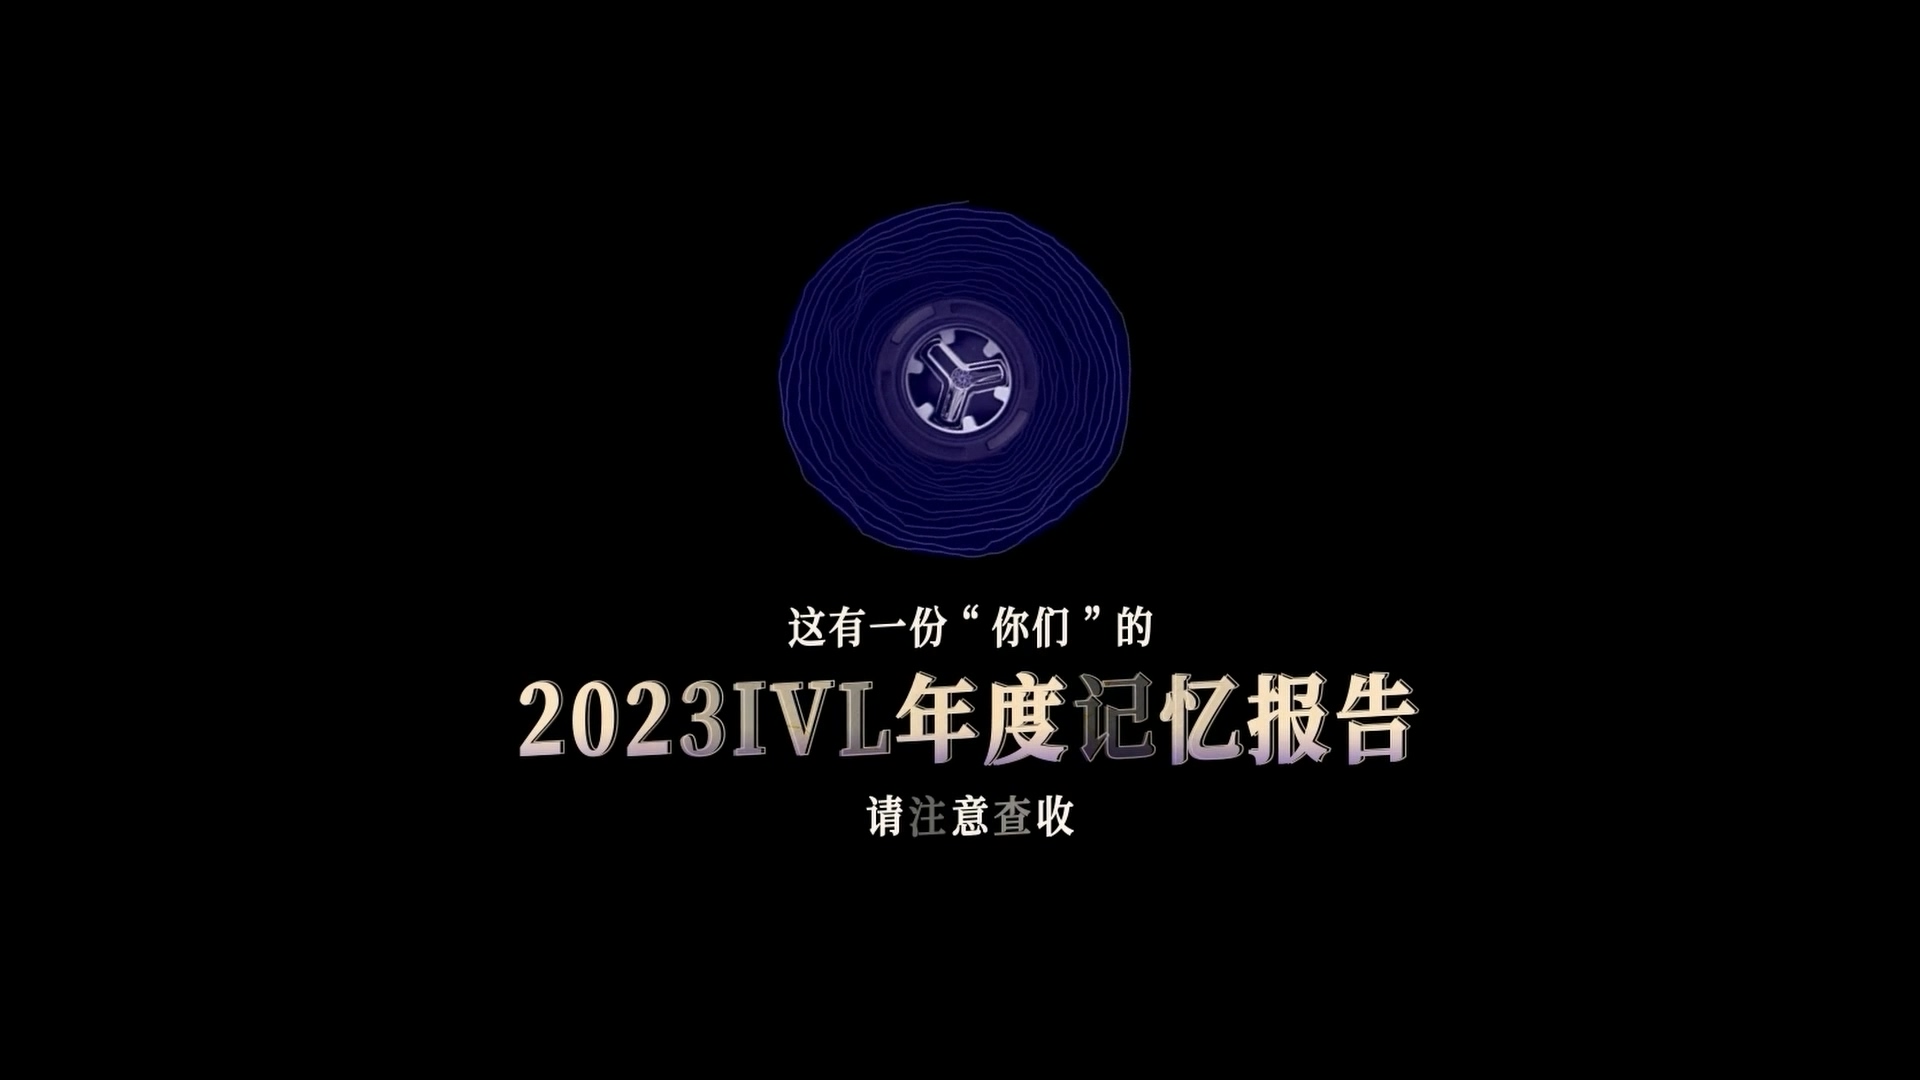 【2023IVL】年度记忆报告